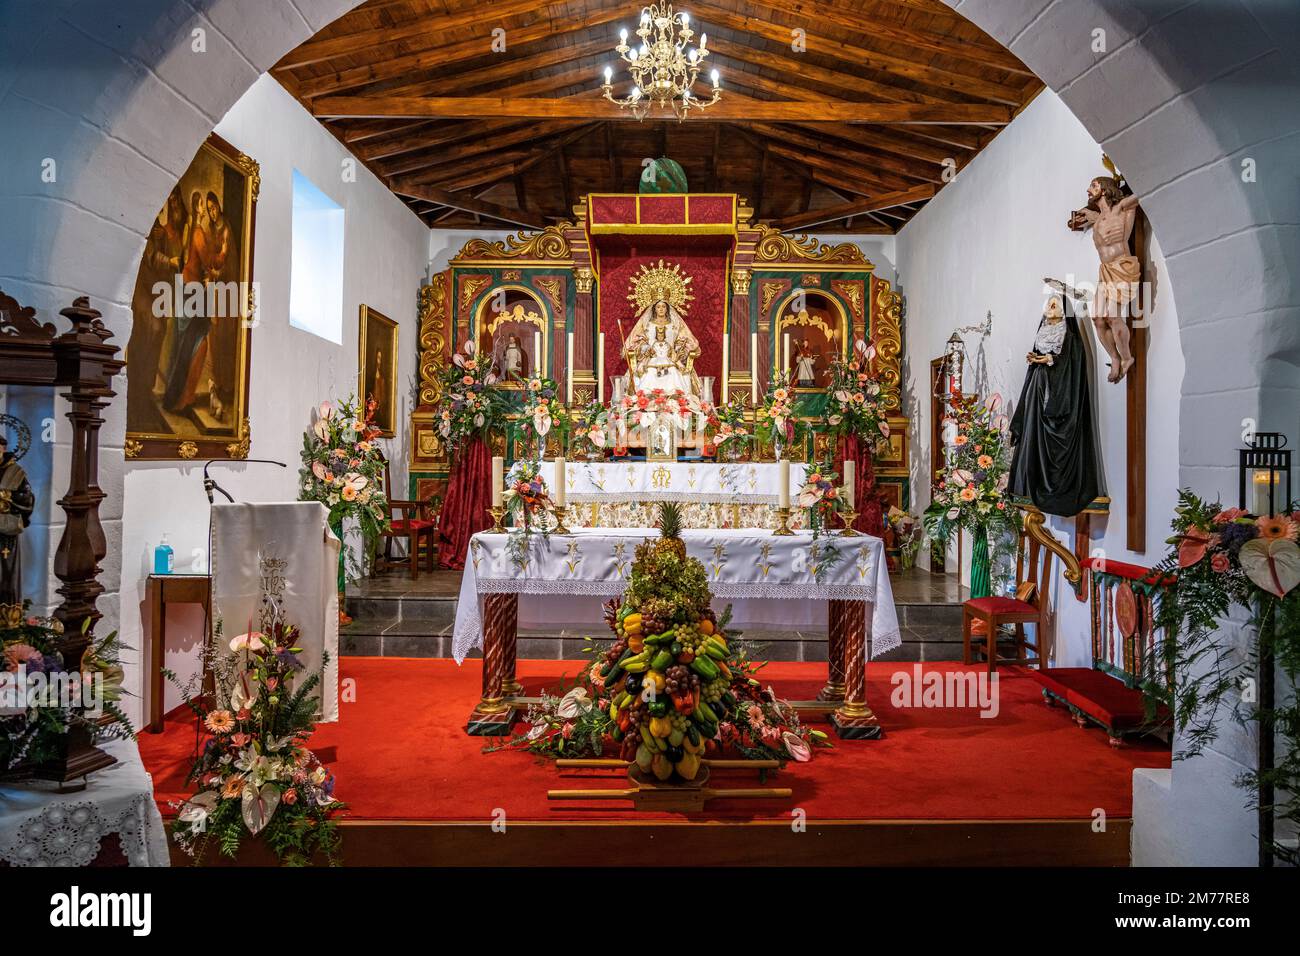 Die zur Bajada geschmückte Kirche Parroquia Nuestra Señora de la Salud in Arure, la Gomera, Kanarische Inseln, Espagnol | décoré pour le Bajada, TH Banque D'Images